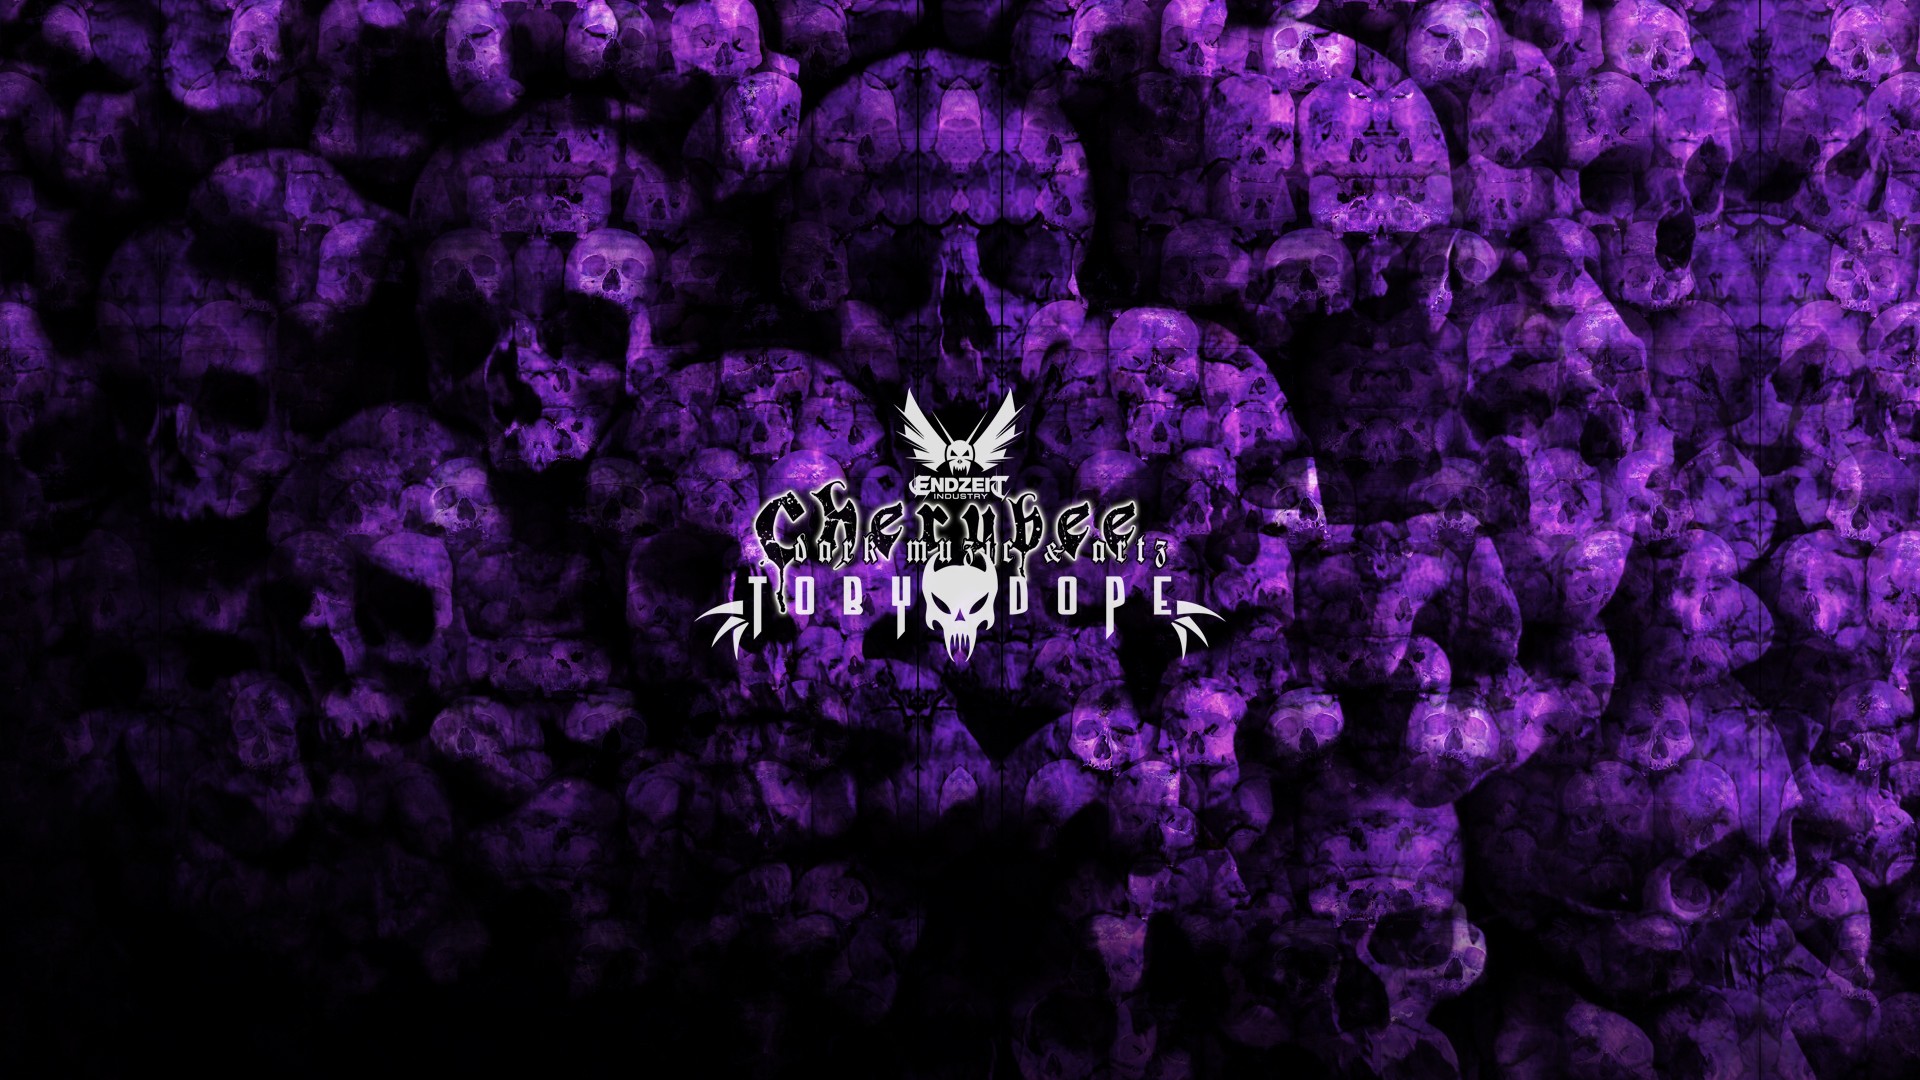 Toby Dope - Wall of Death 2015 - purple (2015/Wallpaper/digital)